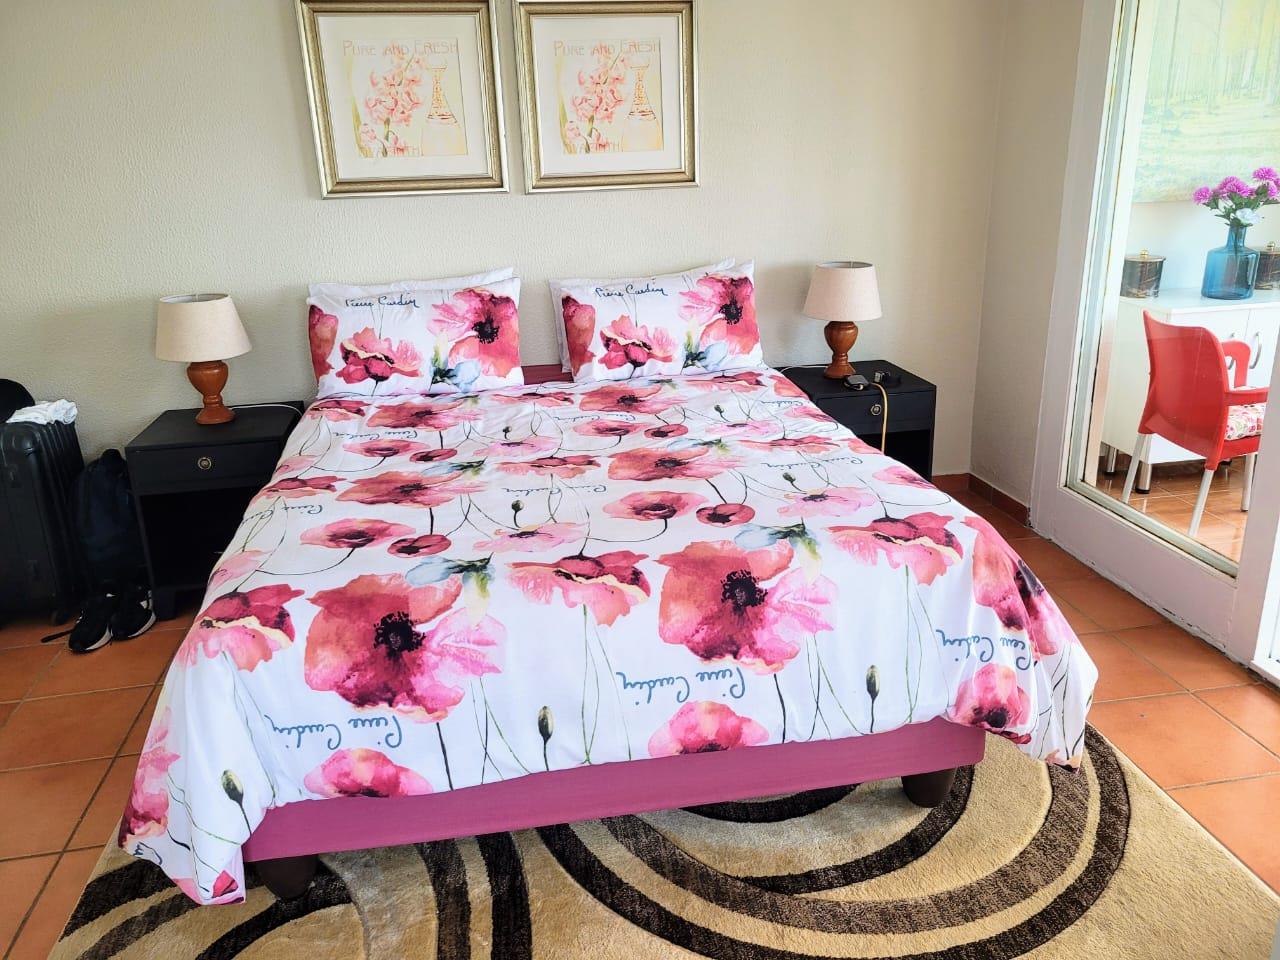 2 Bedroom Property for Sale in Winklespruit KwaZulu-Natal